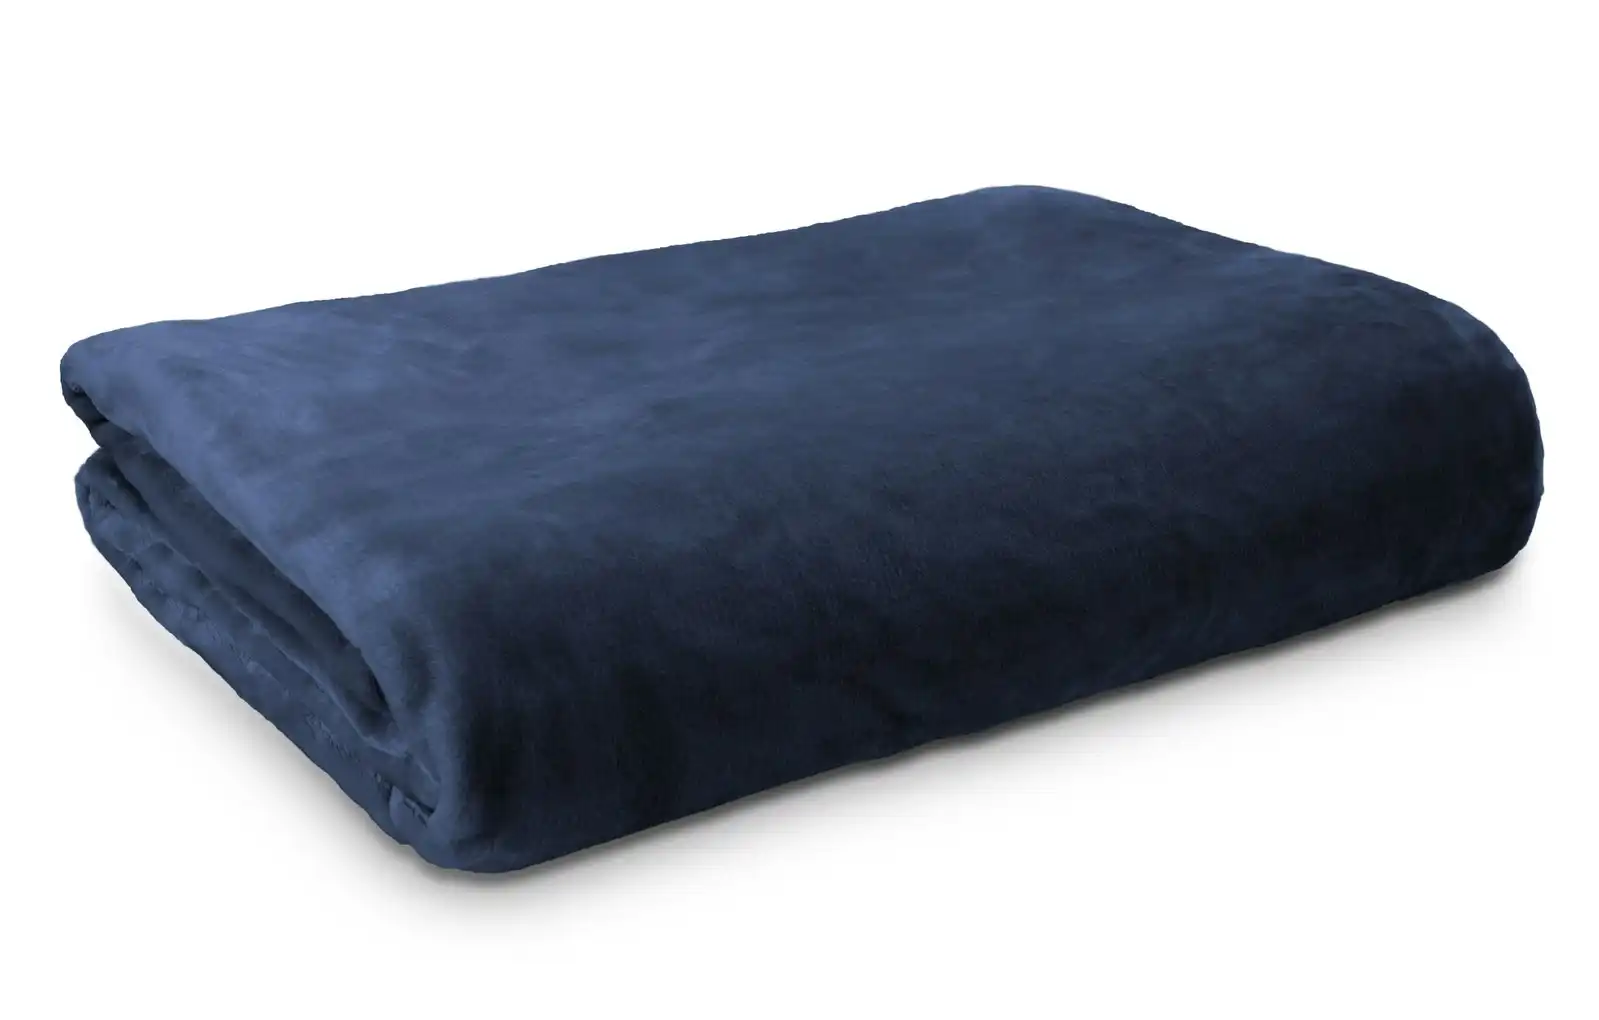 Ardor Boudoir Queen Bed Lucia Luxury Home Plush Velvet Blanket Bedding Navy